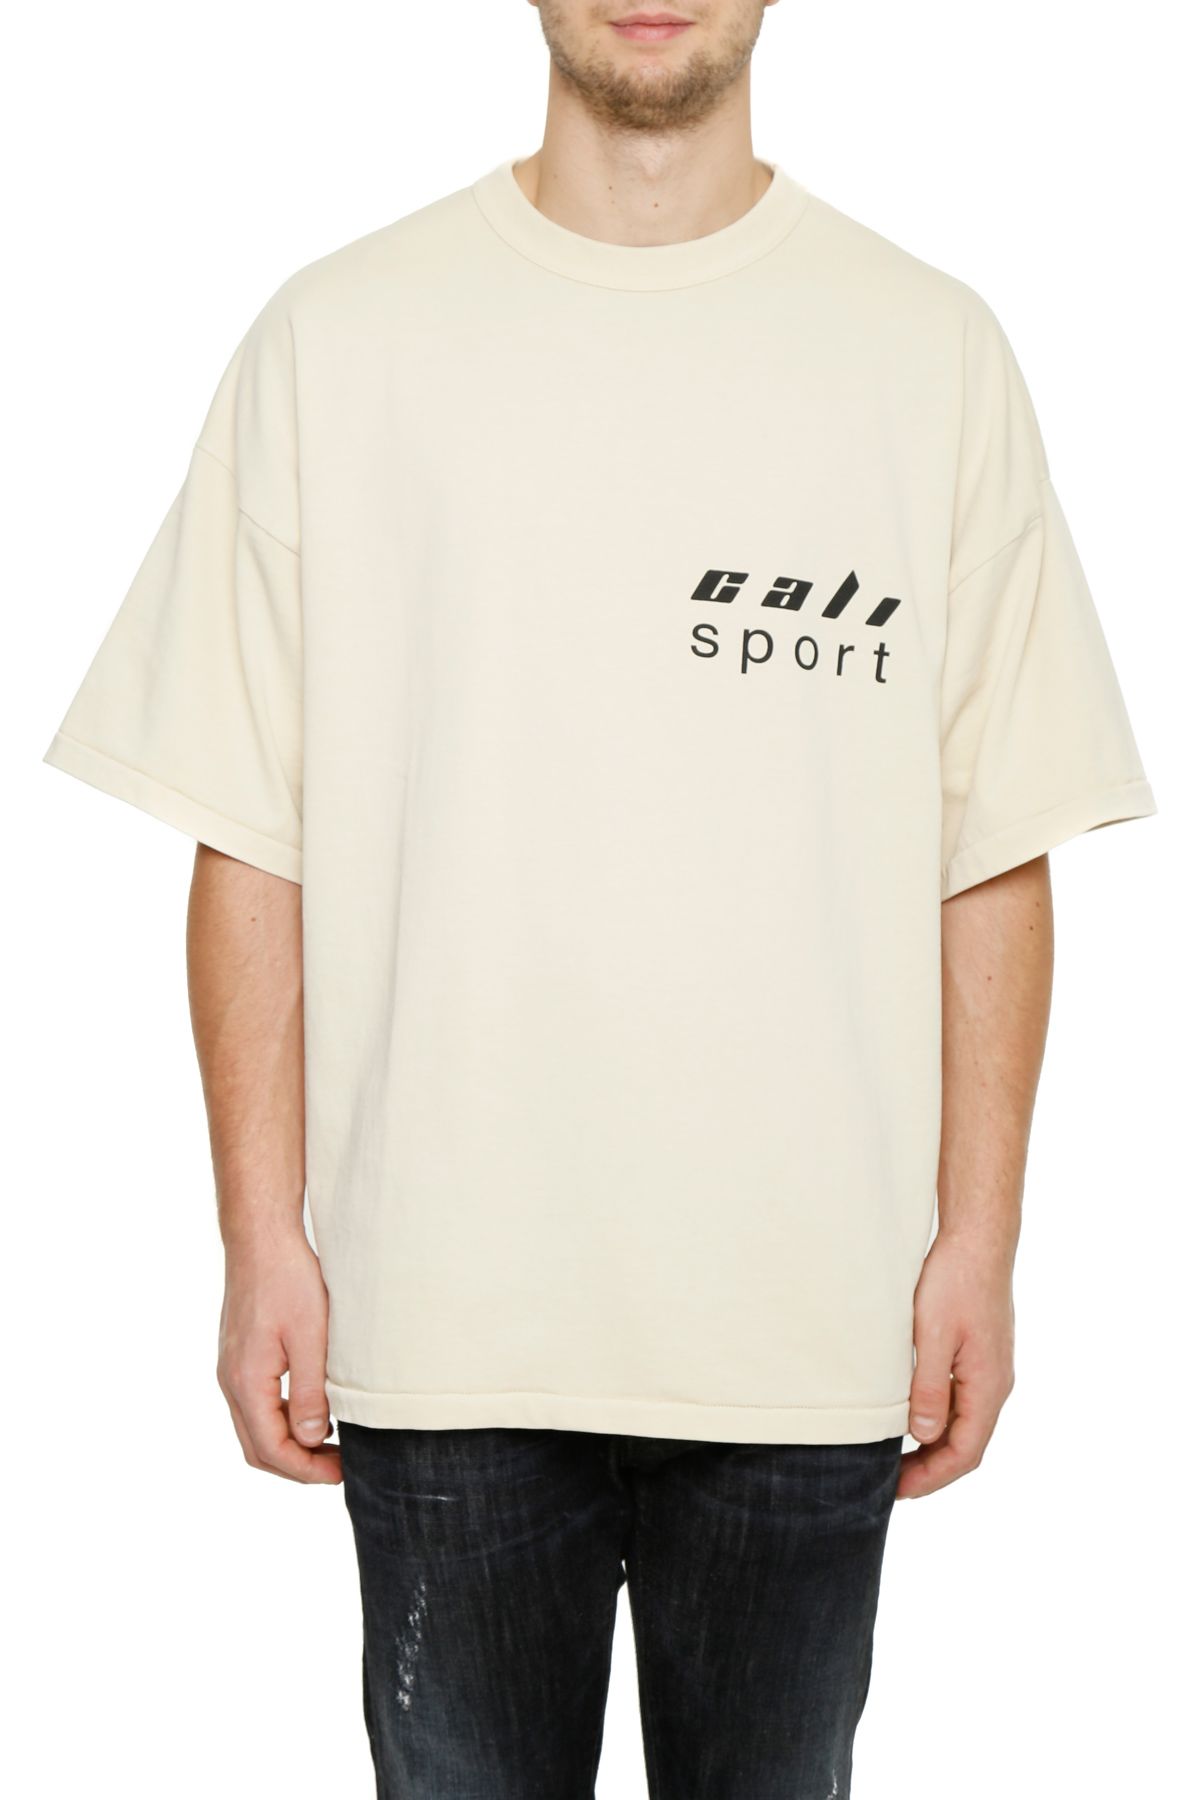 YEEZY Season 5 Cali Sport Cotton-Jersey T-Shirt, Beige | ModeSens